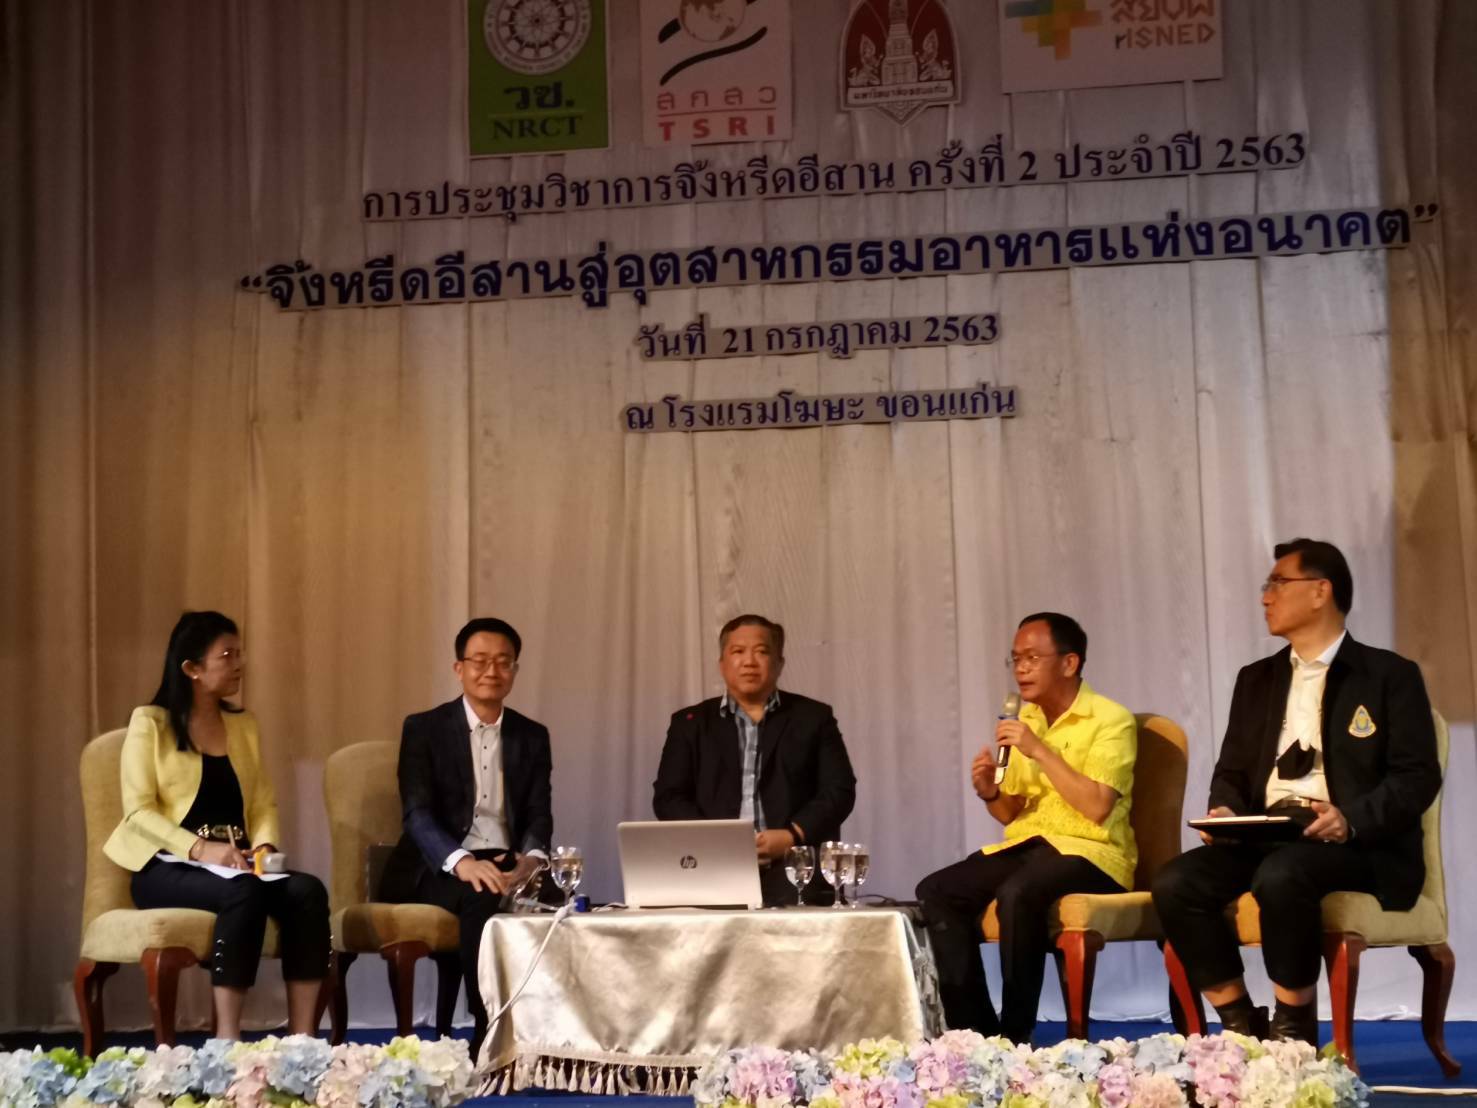 รัฐมนตรีเกษตรฯ ดันไทยสู่มหาอำนาจจิ้งหรีดโลก สศก. โชว์ศักยภาพ เกษตรผลิตพาณิชย์ตลาด ขับเคลื่อนอุตสาหกรรมเกษตร